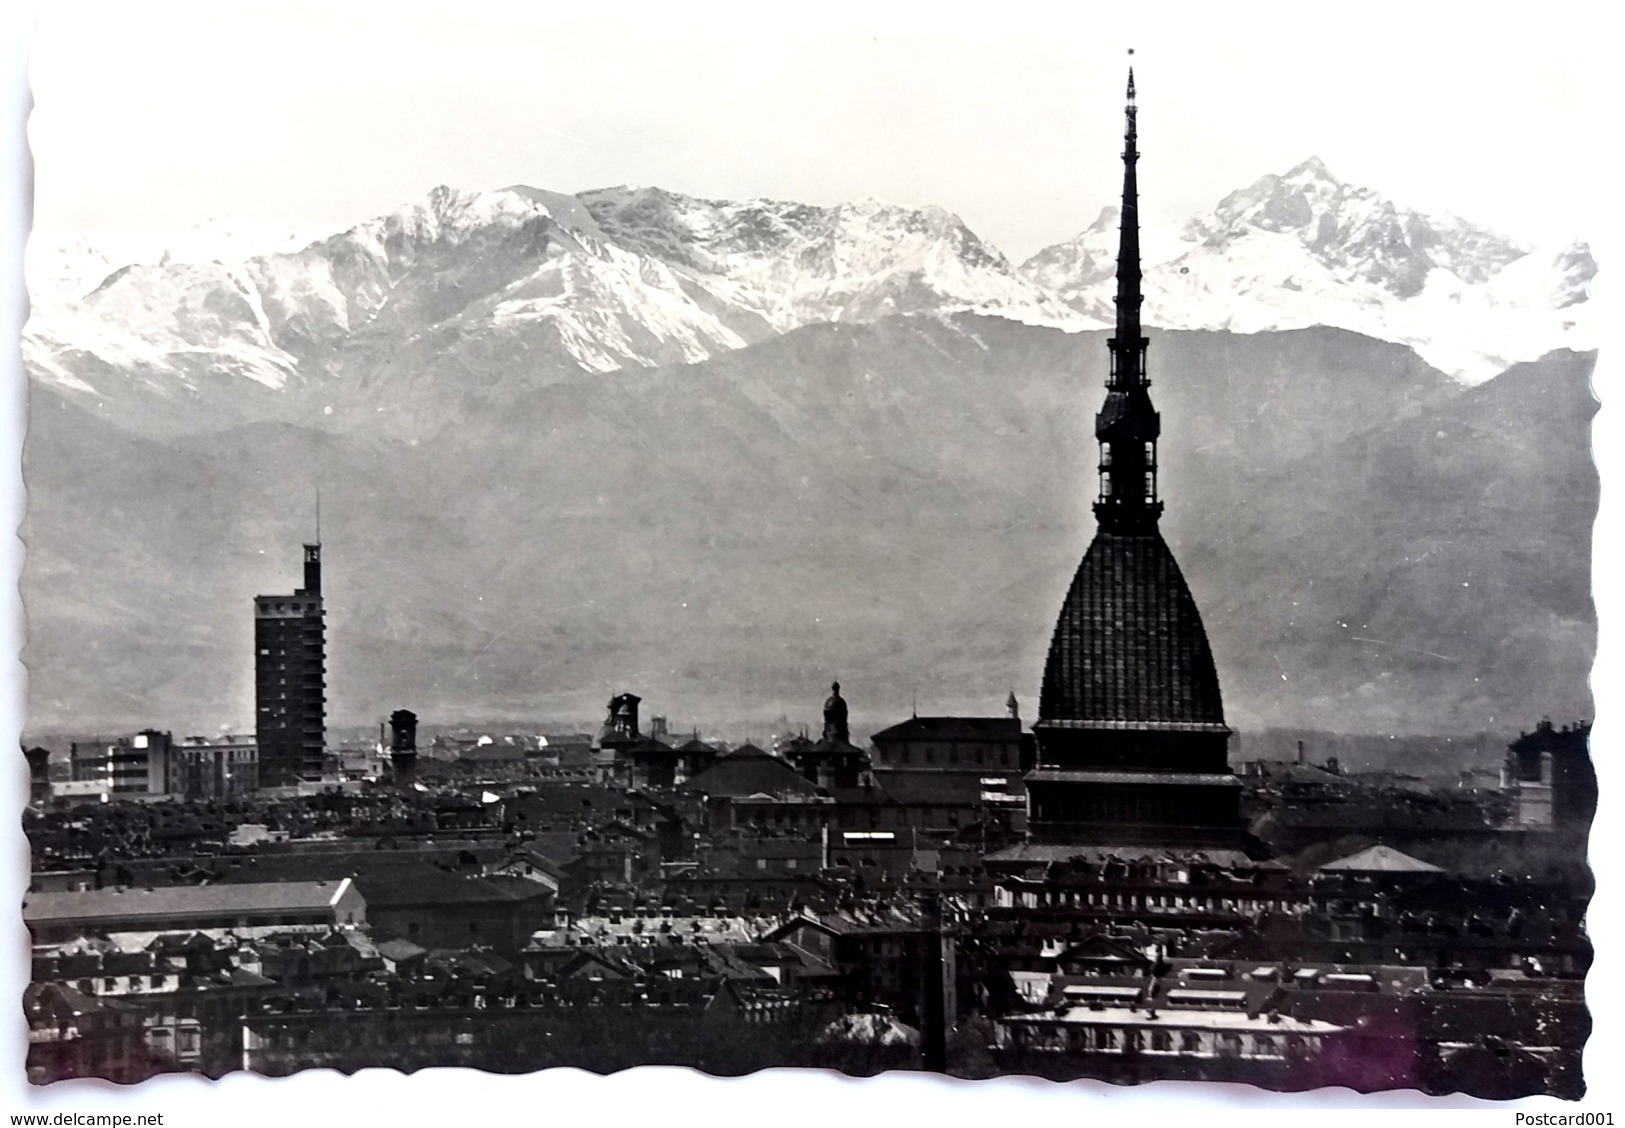 #697   Panorama View Of TORINO (Turin) - Piemonte, ITALY - Postcard - Mole Antonelliana